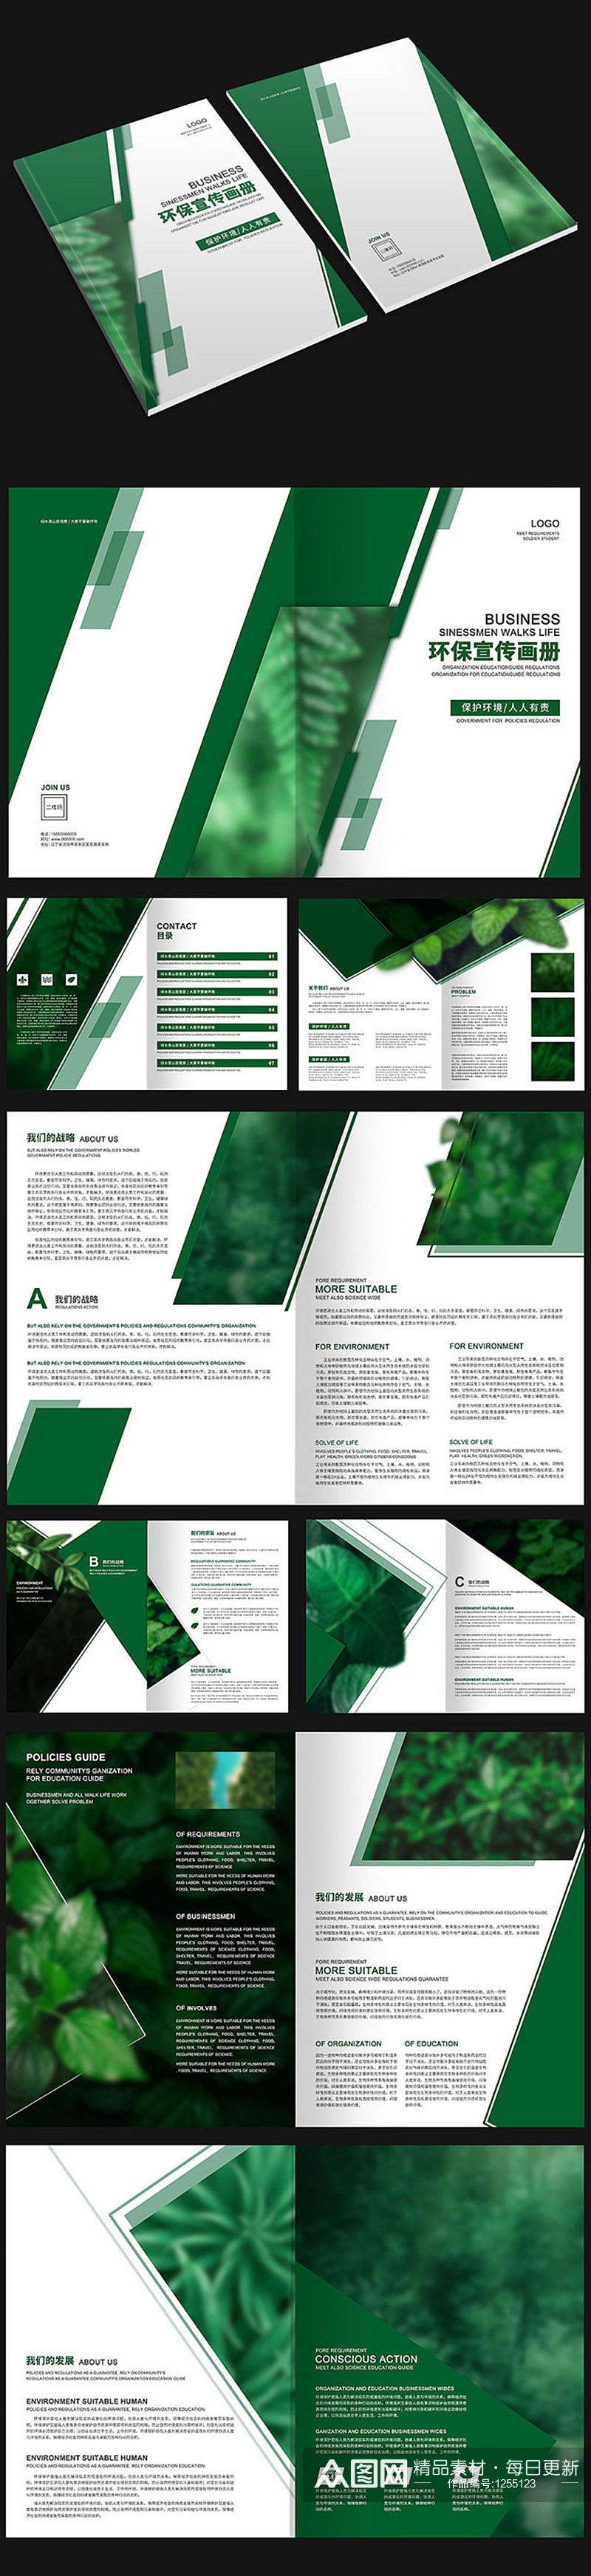 绿色树叶环保画册设计素材